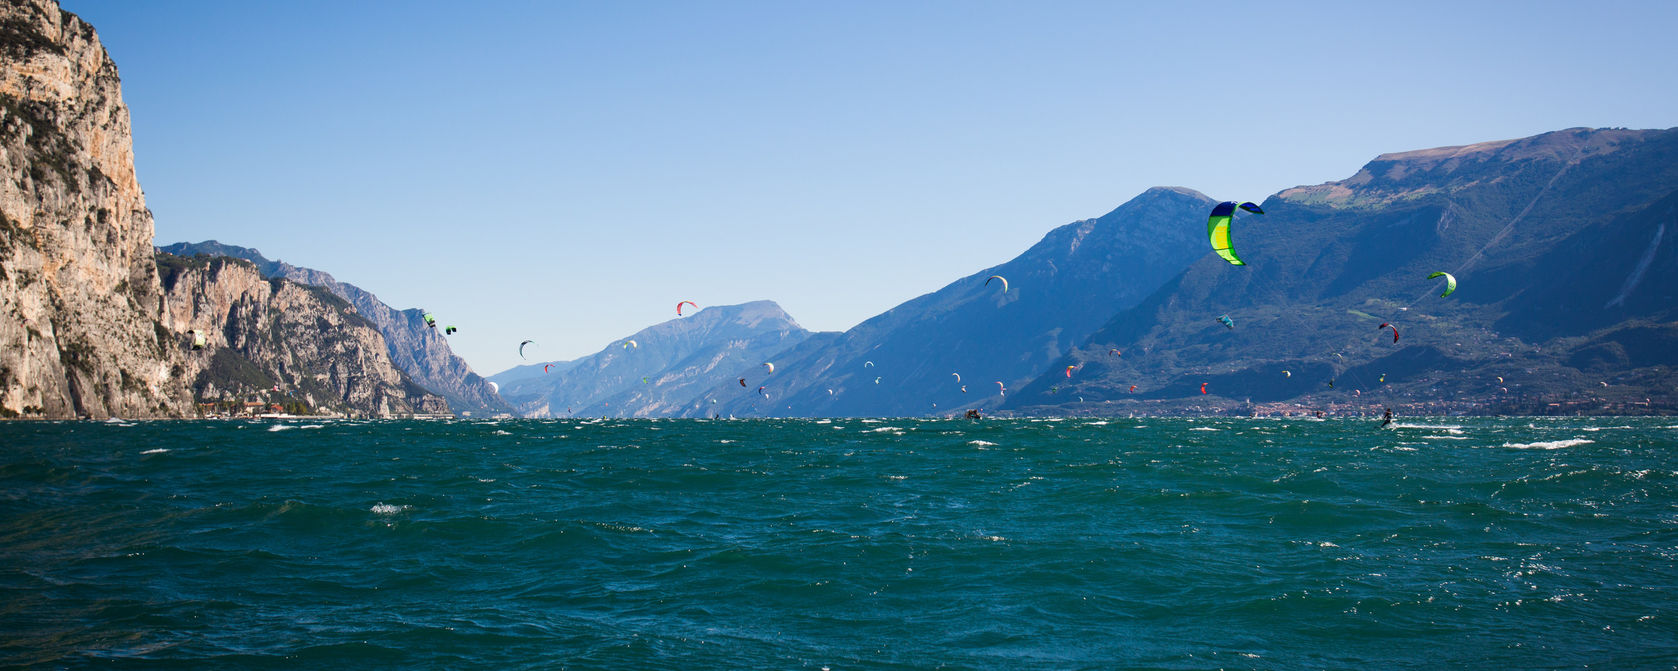 Wind zum Kiten am Gardasee